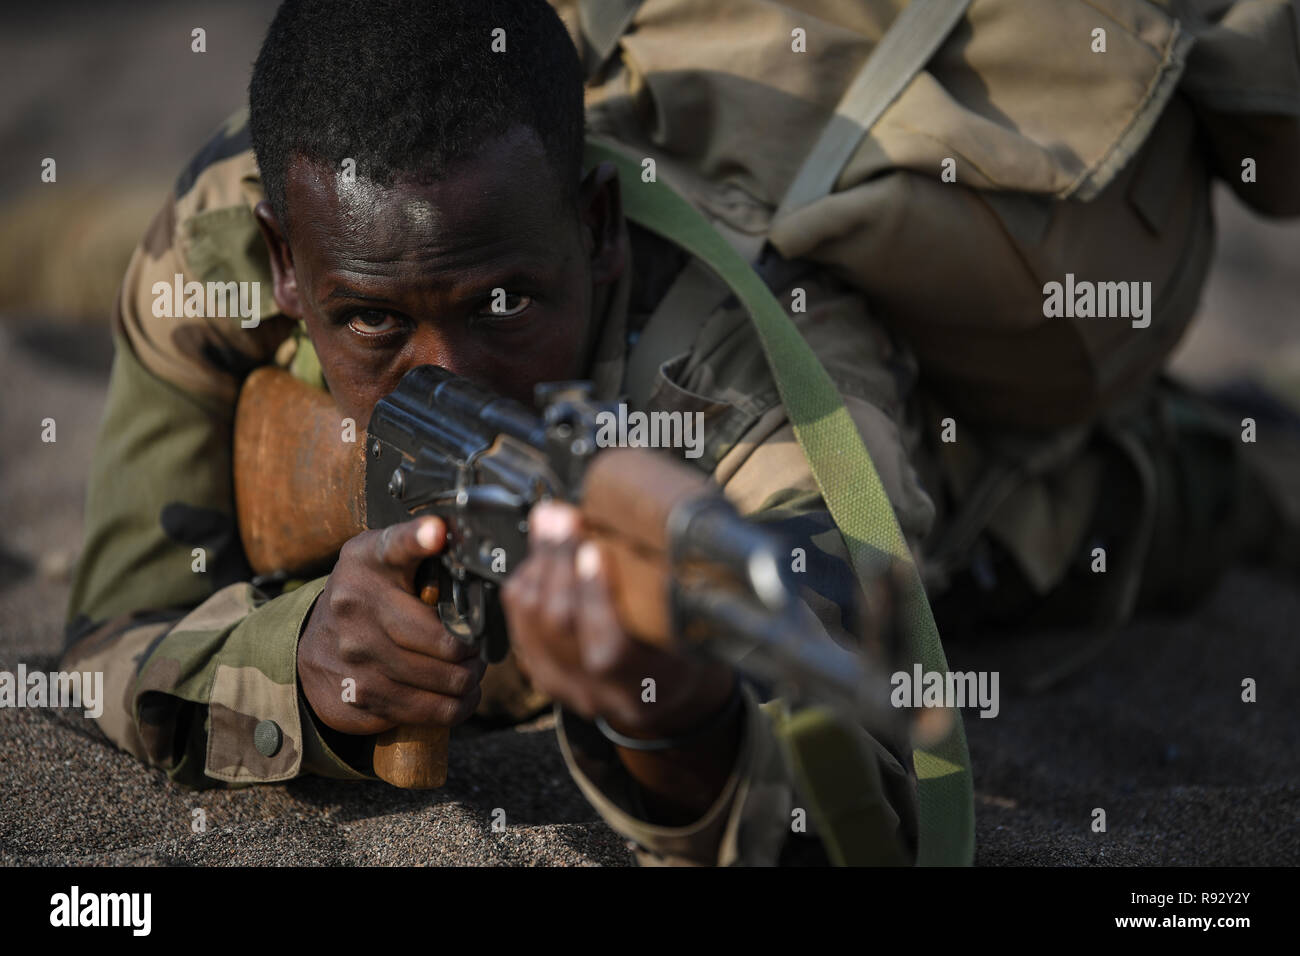 Un soldat djiboutien avec le bataillon d'intervention rapide au cours de tactiques d'infanterie et les procédures de la formation enseignée par les forces américaines le 18 décembre 2018 près de la ville de Djibouti, Djibouti. Banque D'Images